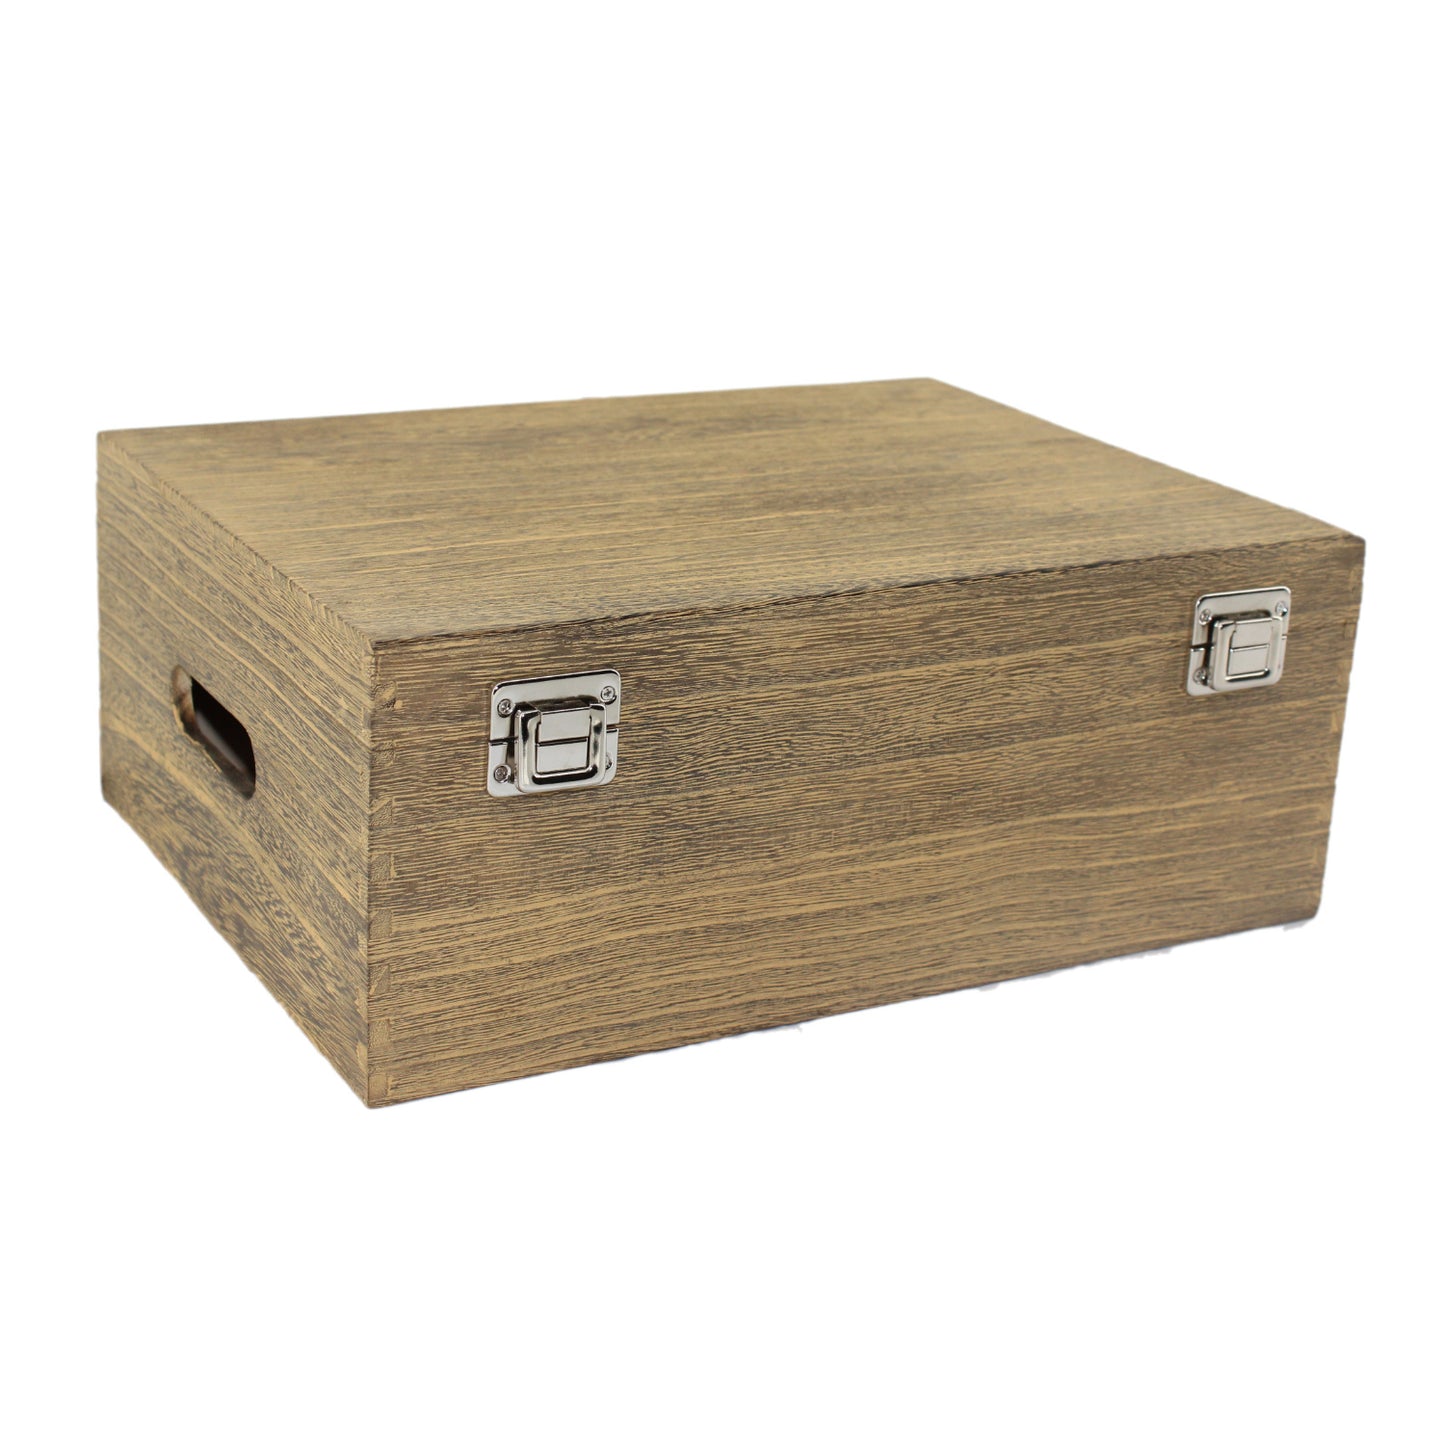 14 Inch Oak Effect Wooden Box